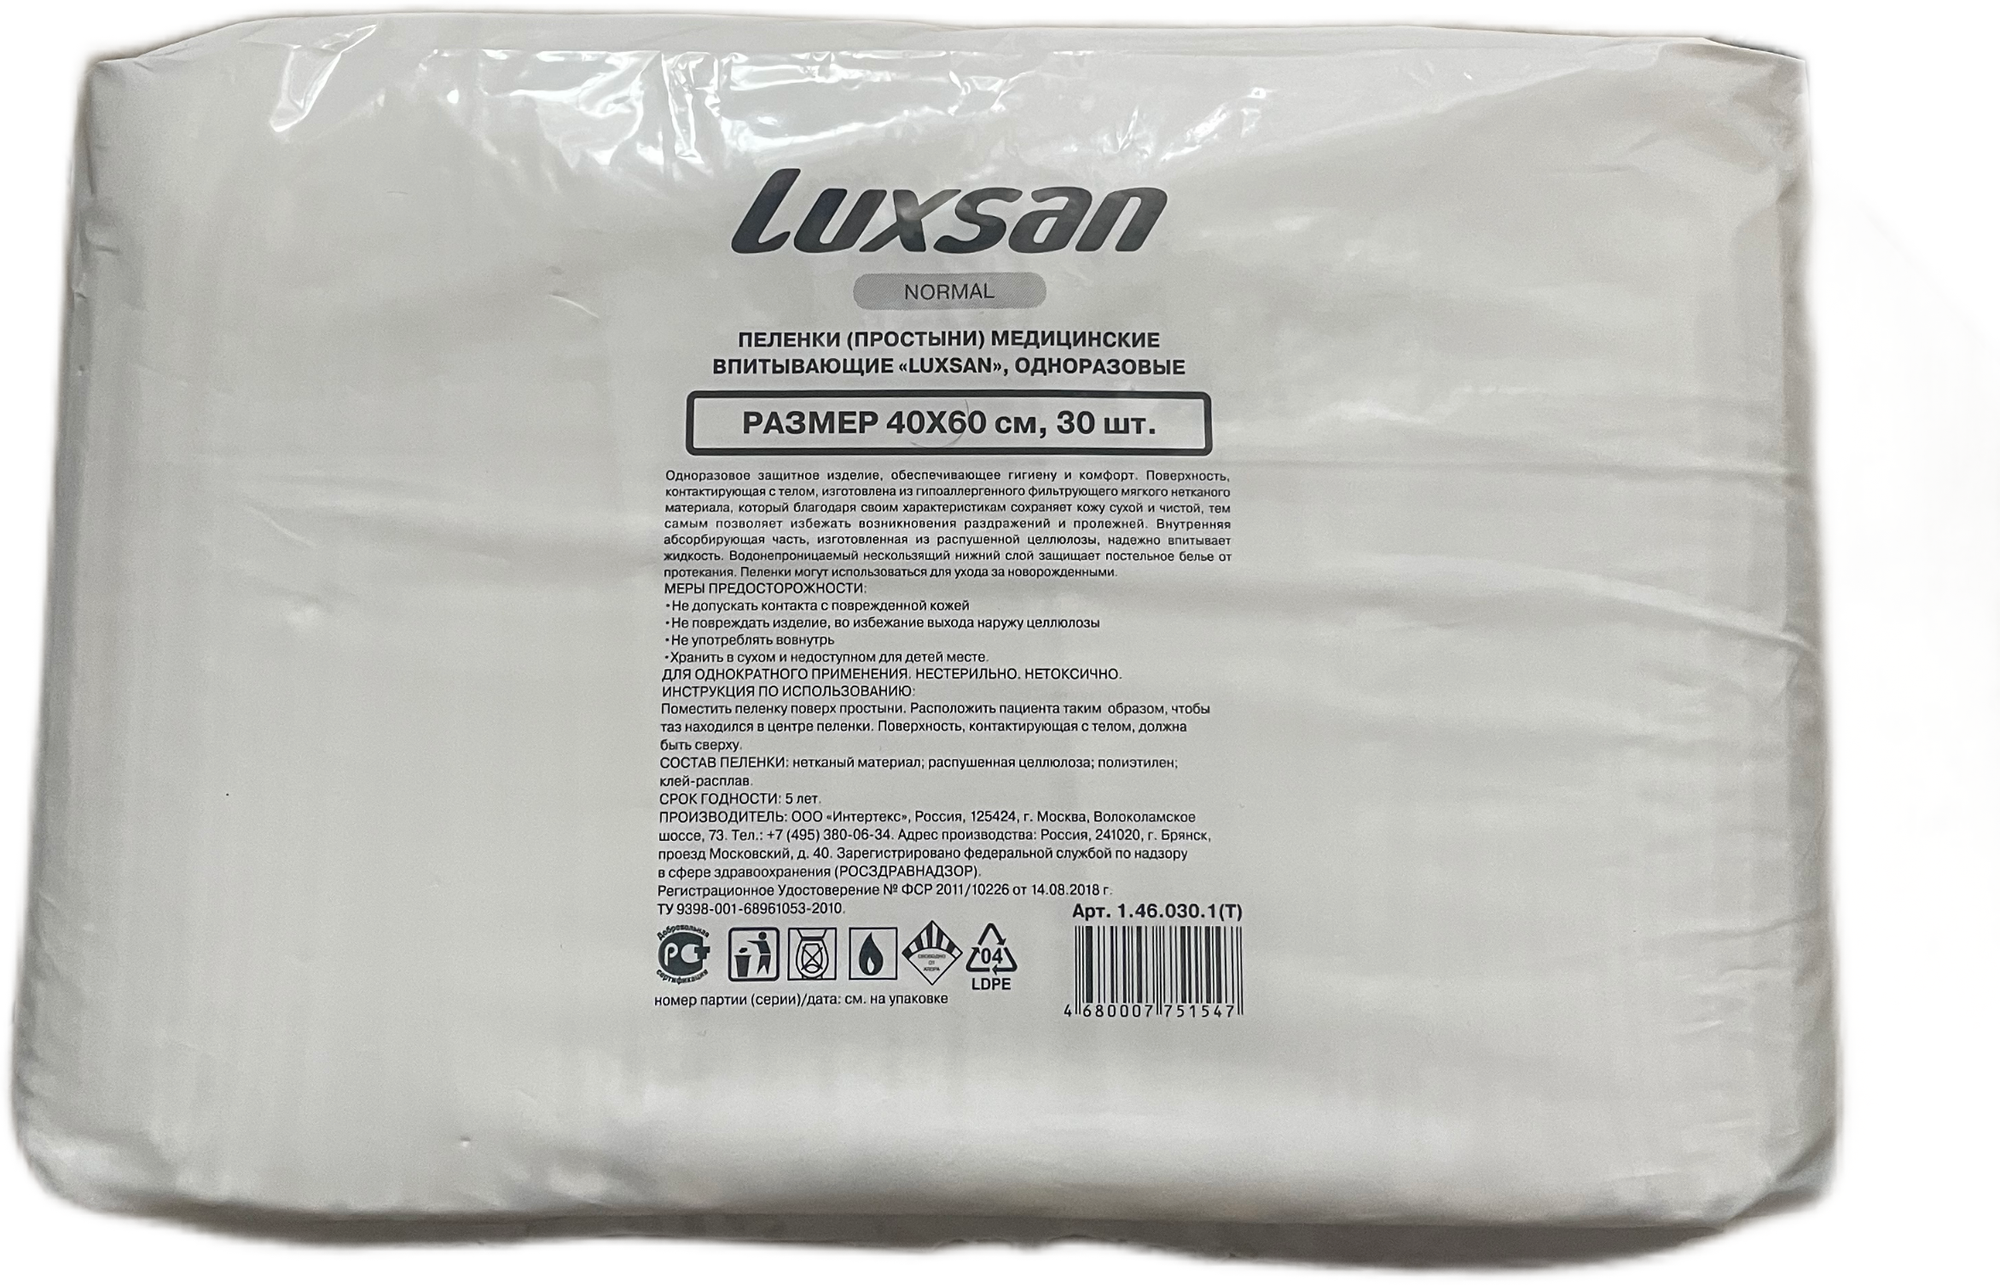 Пеленки медицинские одноразовые Luxsan 40 х 60 (100% целлюлоза) 30 штук